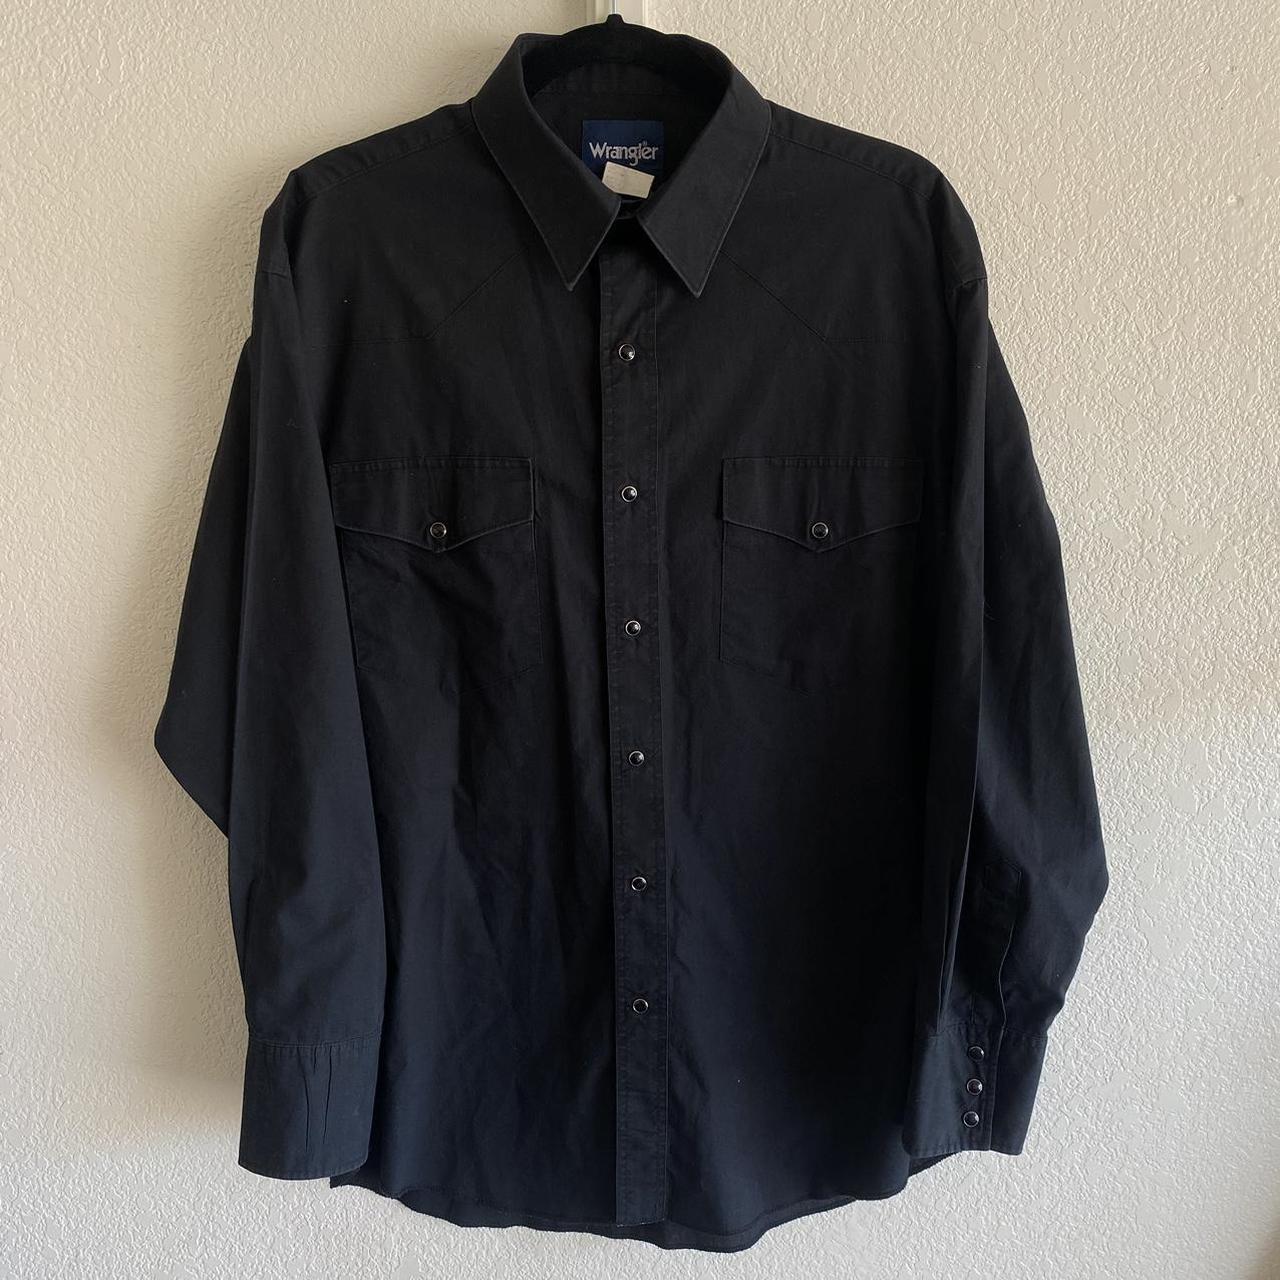 Vintage black Wrangler Western button up shirt with... - Depop